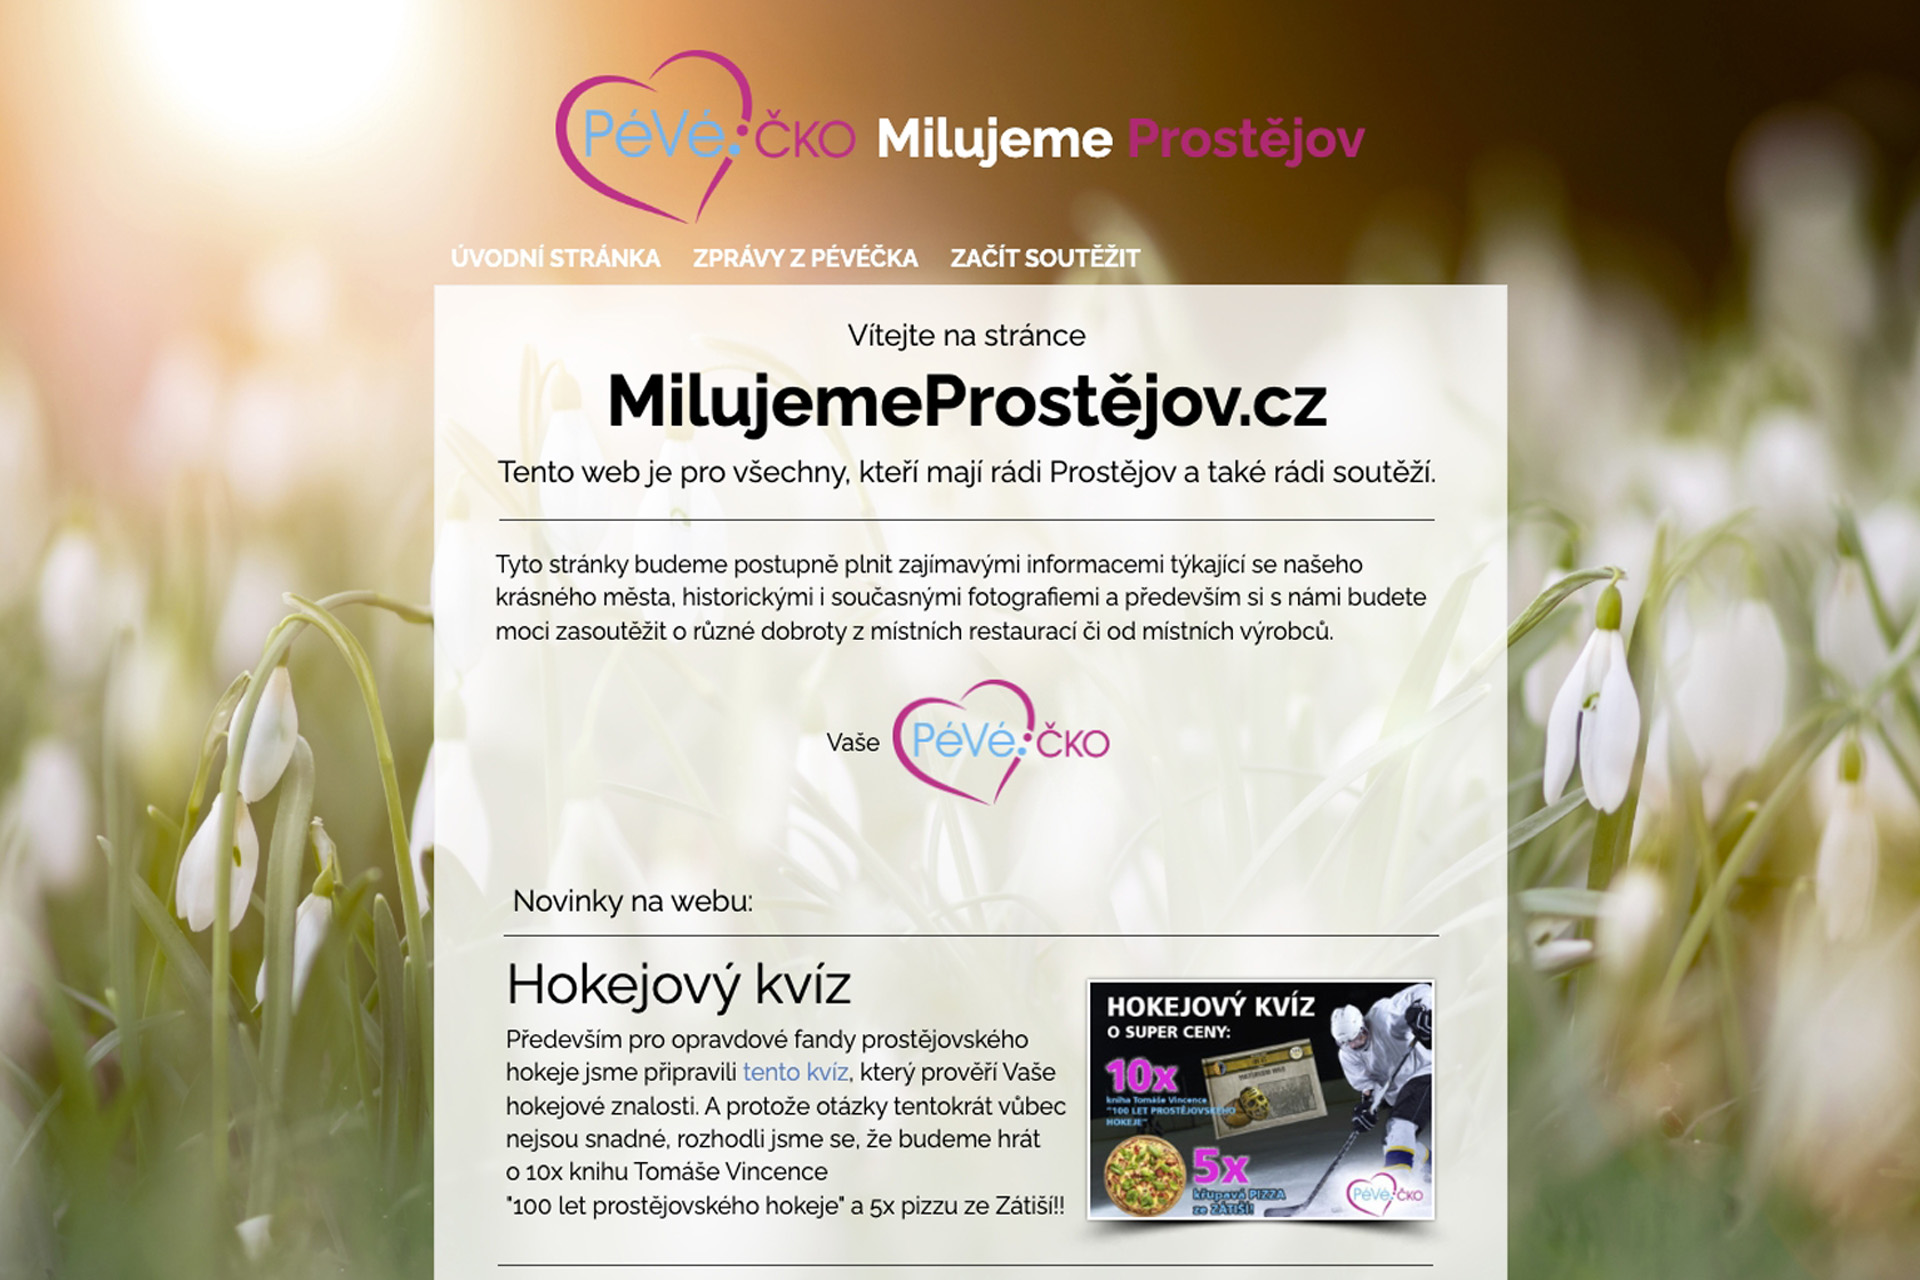 Nový soutěžní web www.MilujemeProstejov.cz